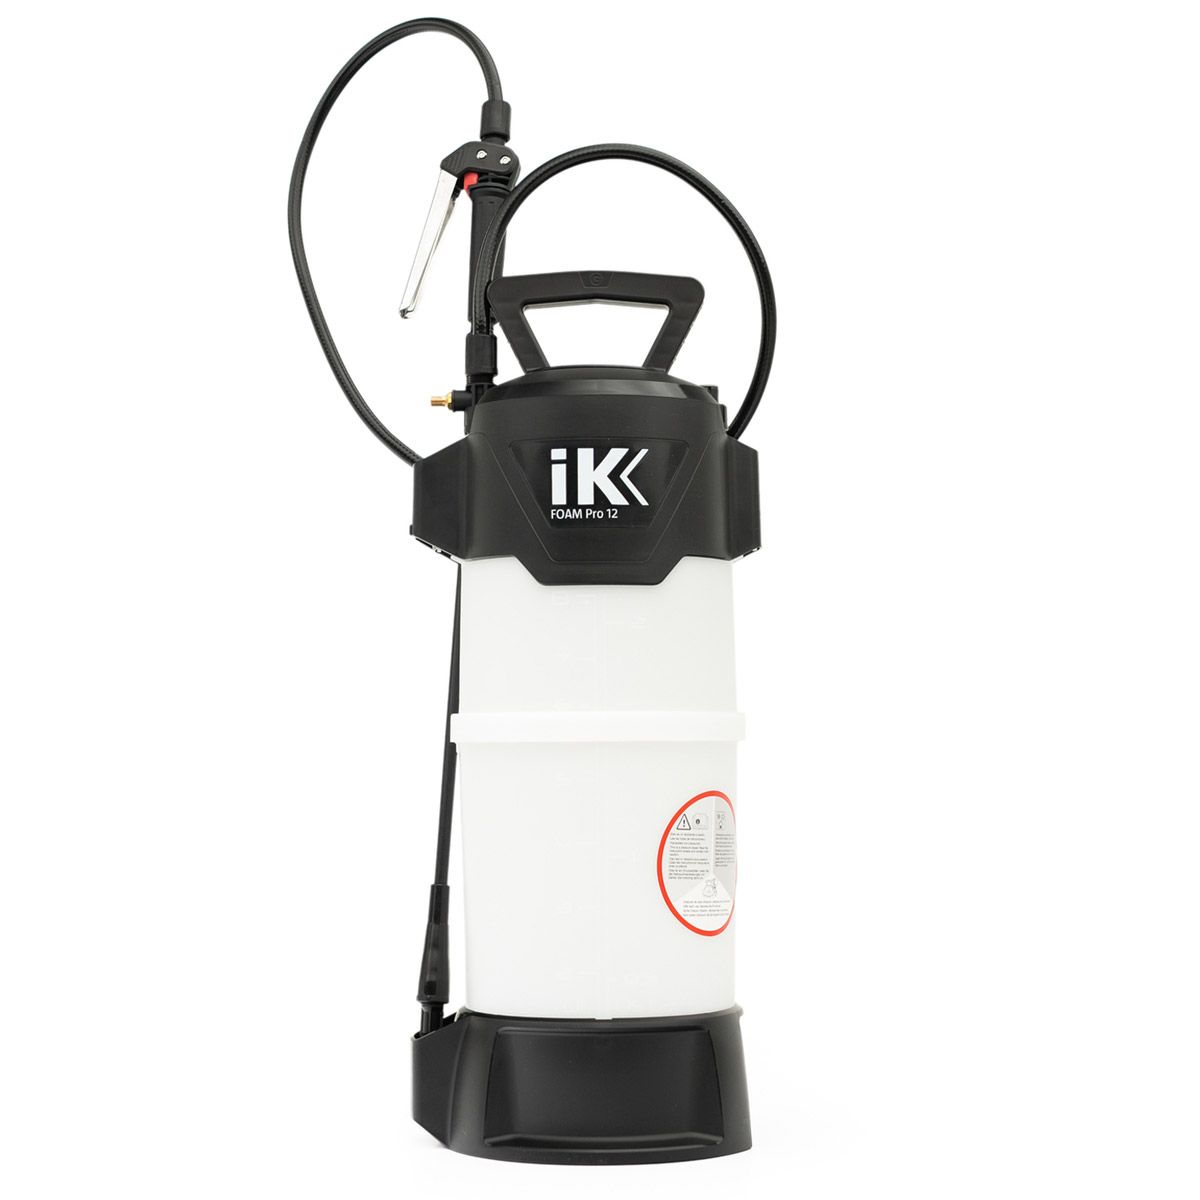 IK Foam 12 Sprayer – Jax Wax El Cajon